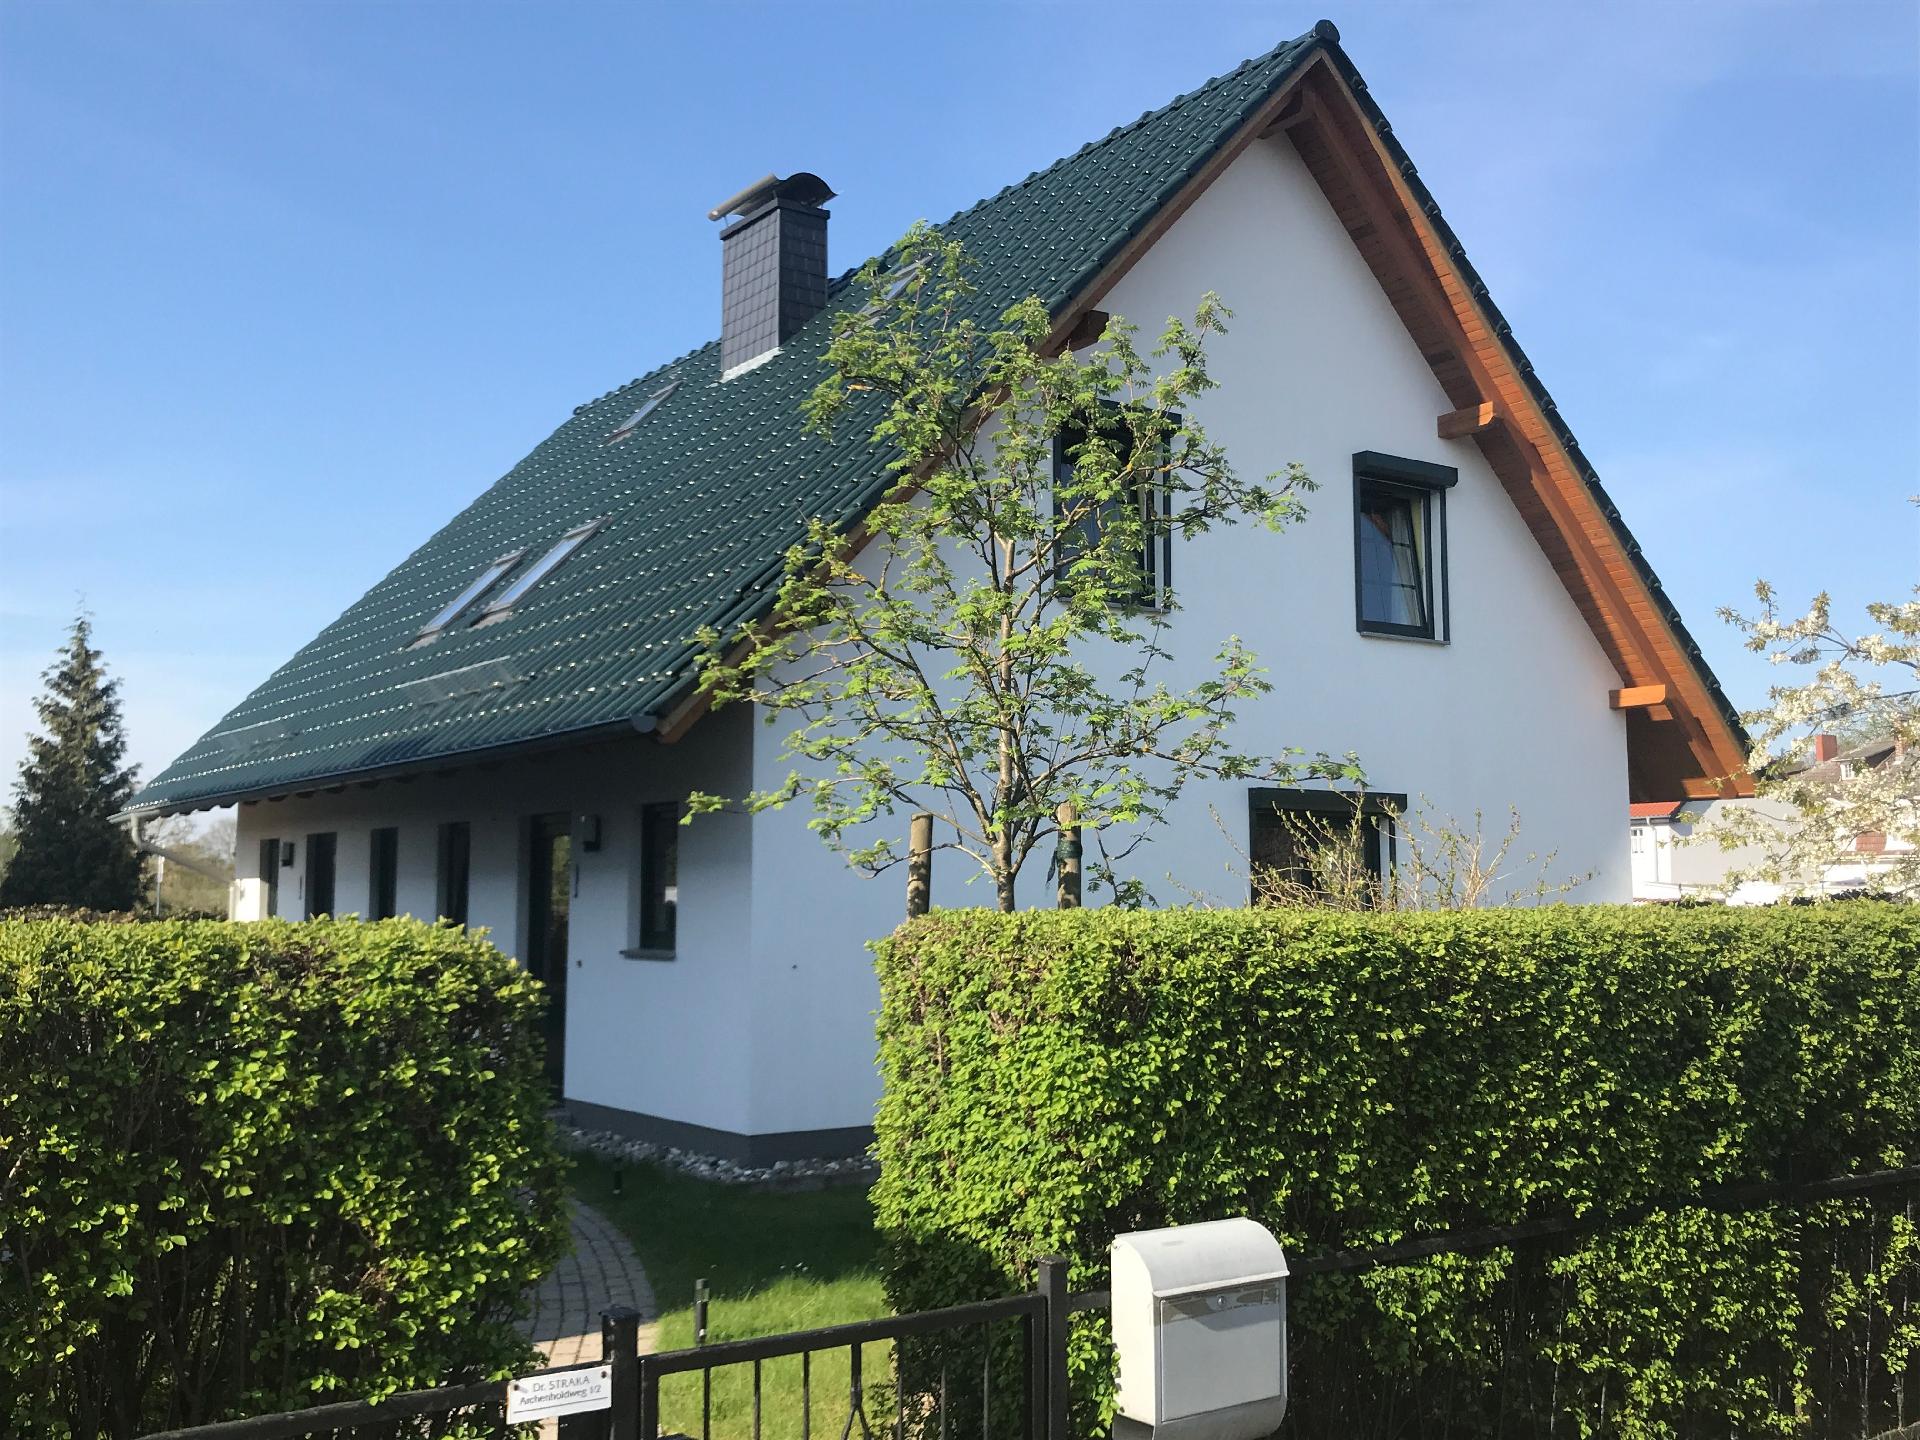 Ferienhaus in Bansin mit Garten, Terrasse und Gril Ferienhaus auf Usedom